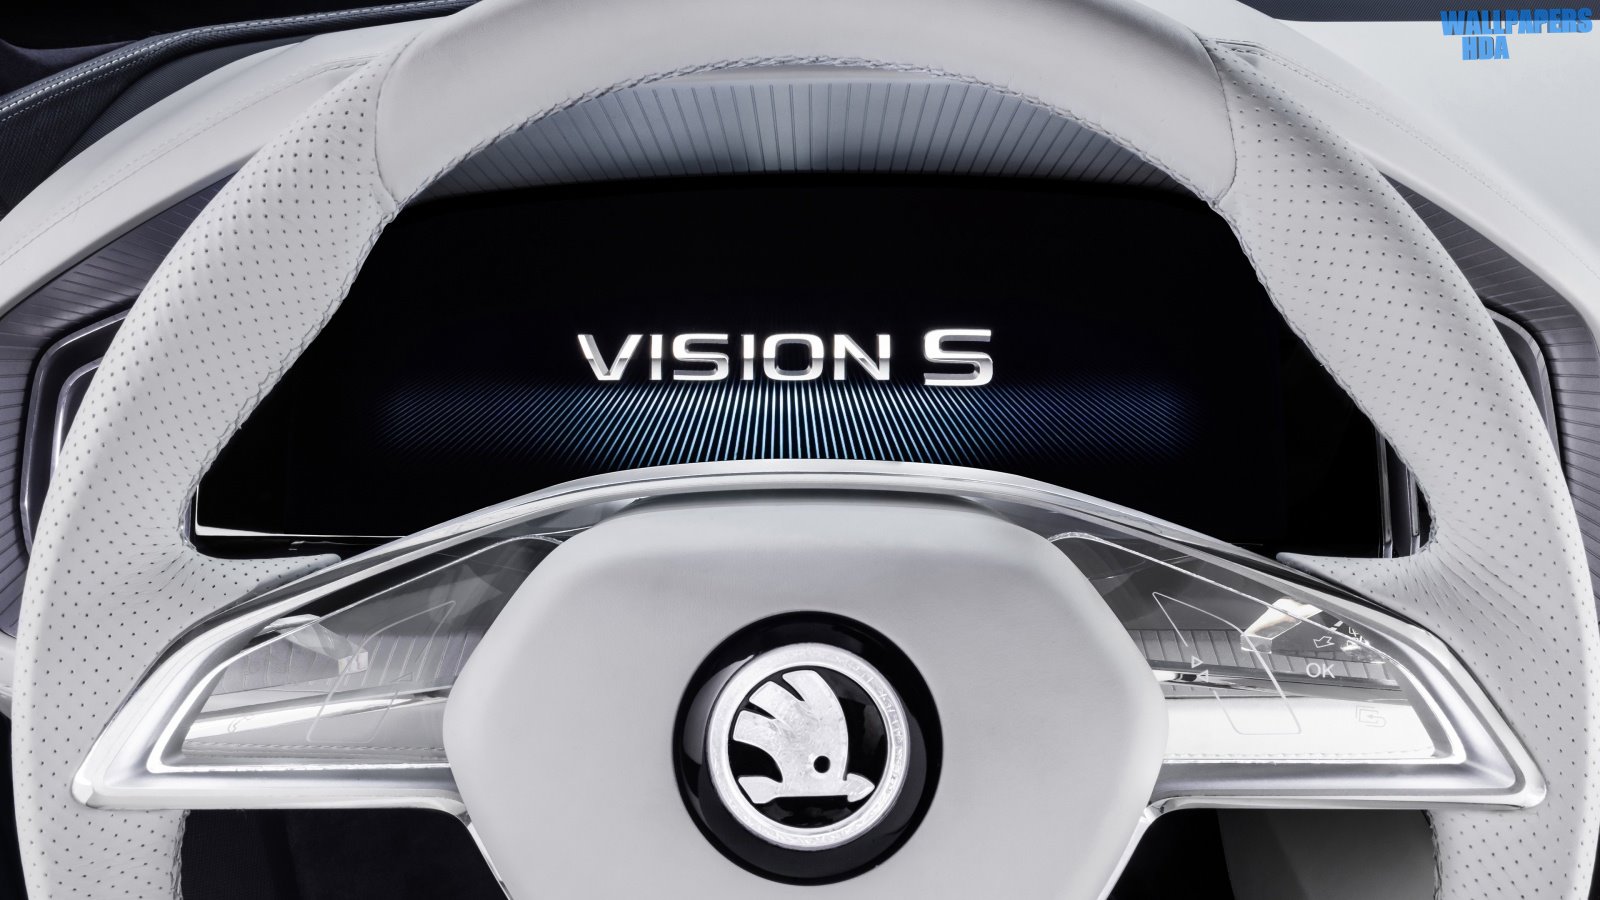 Skoda vision s logo 1600x900